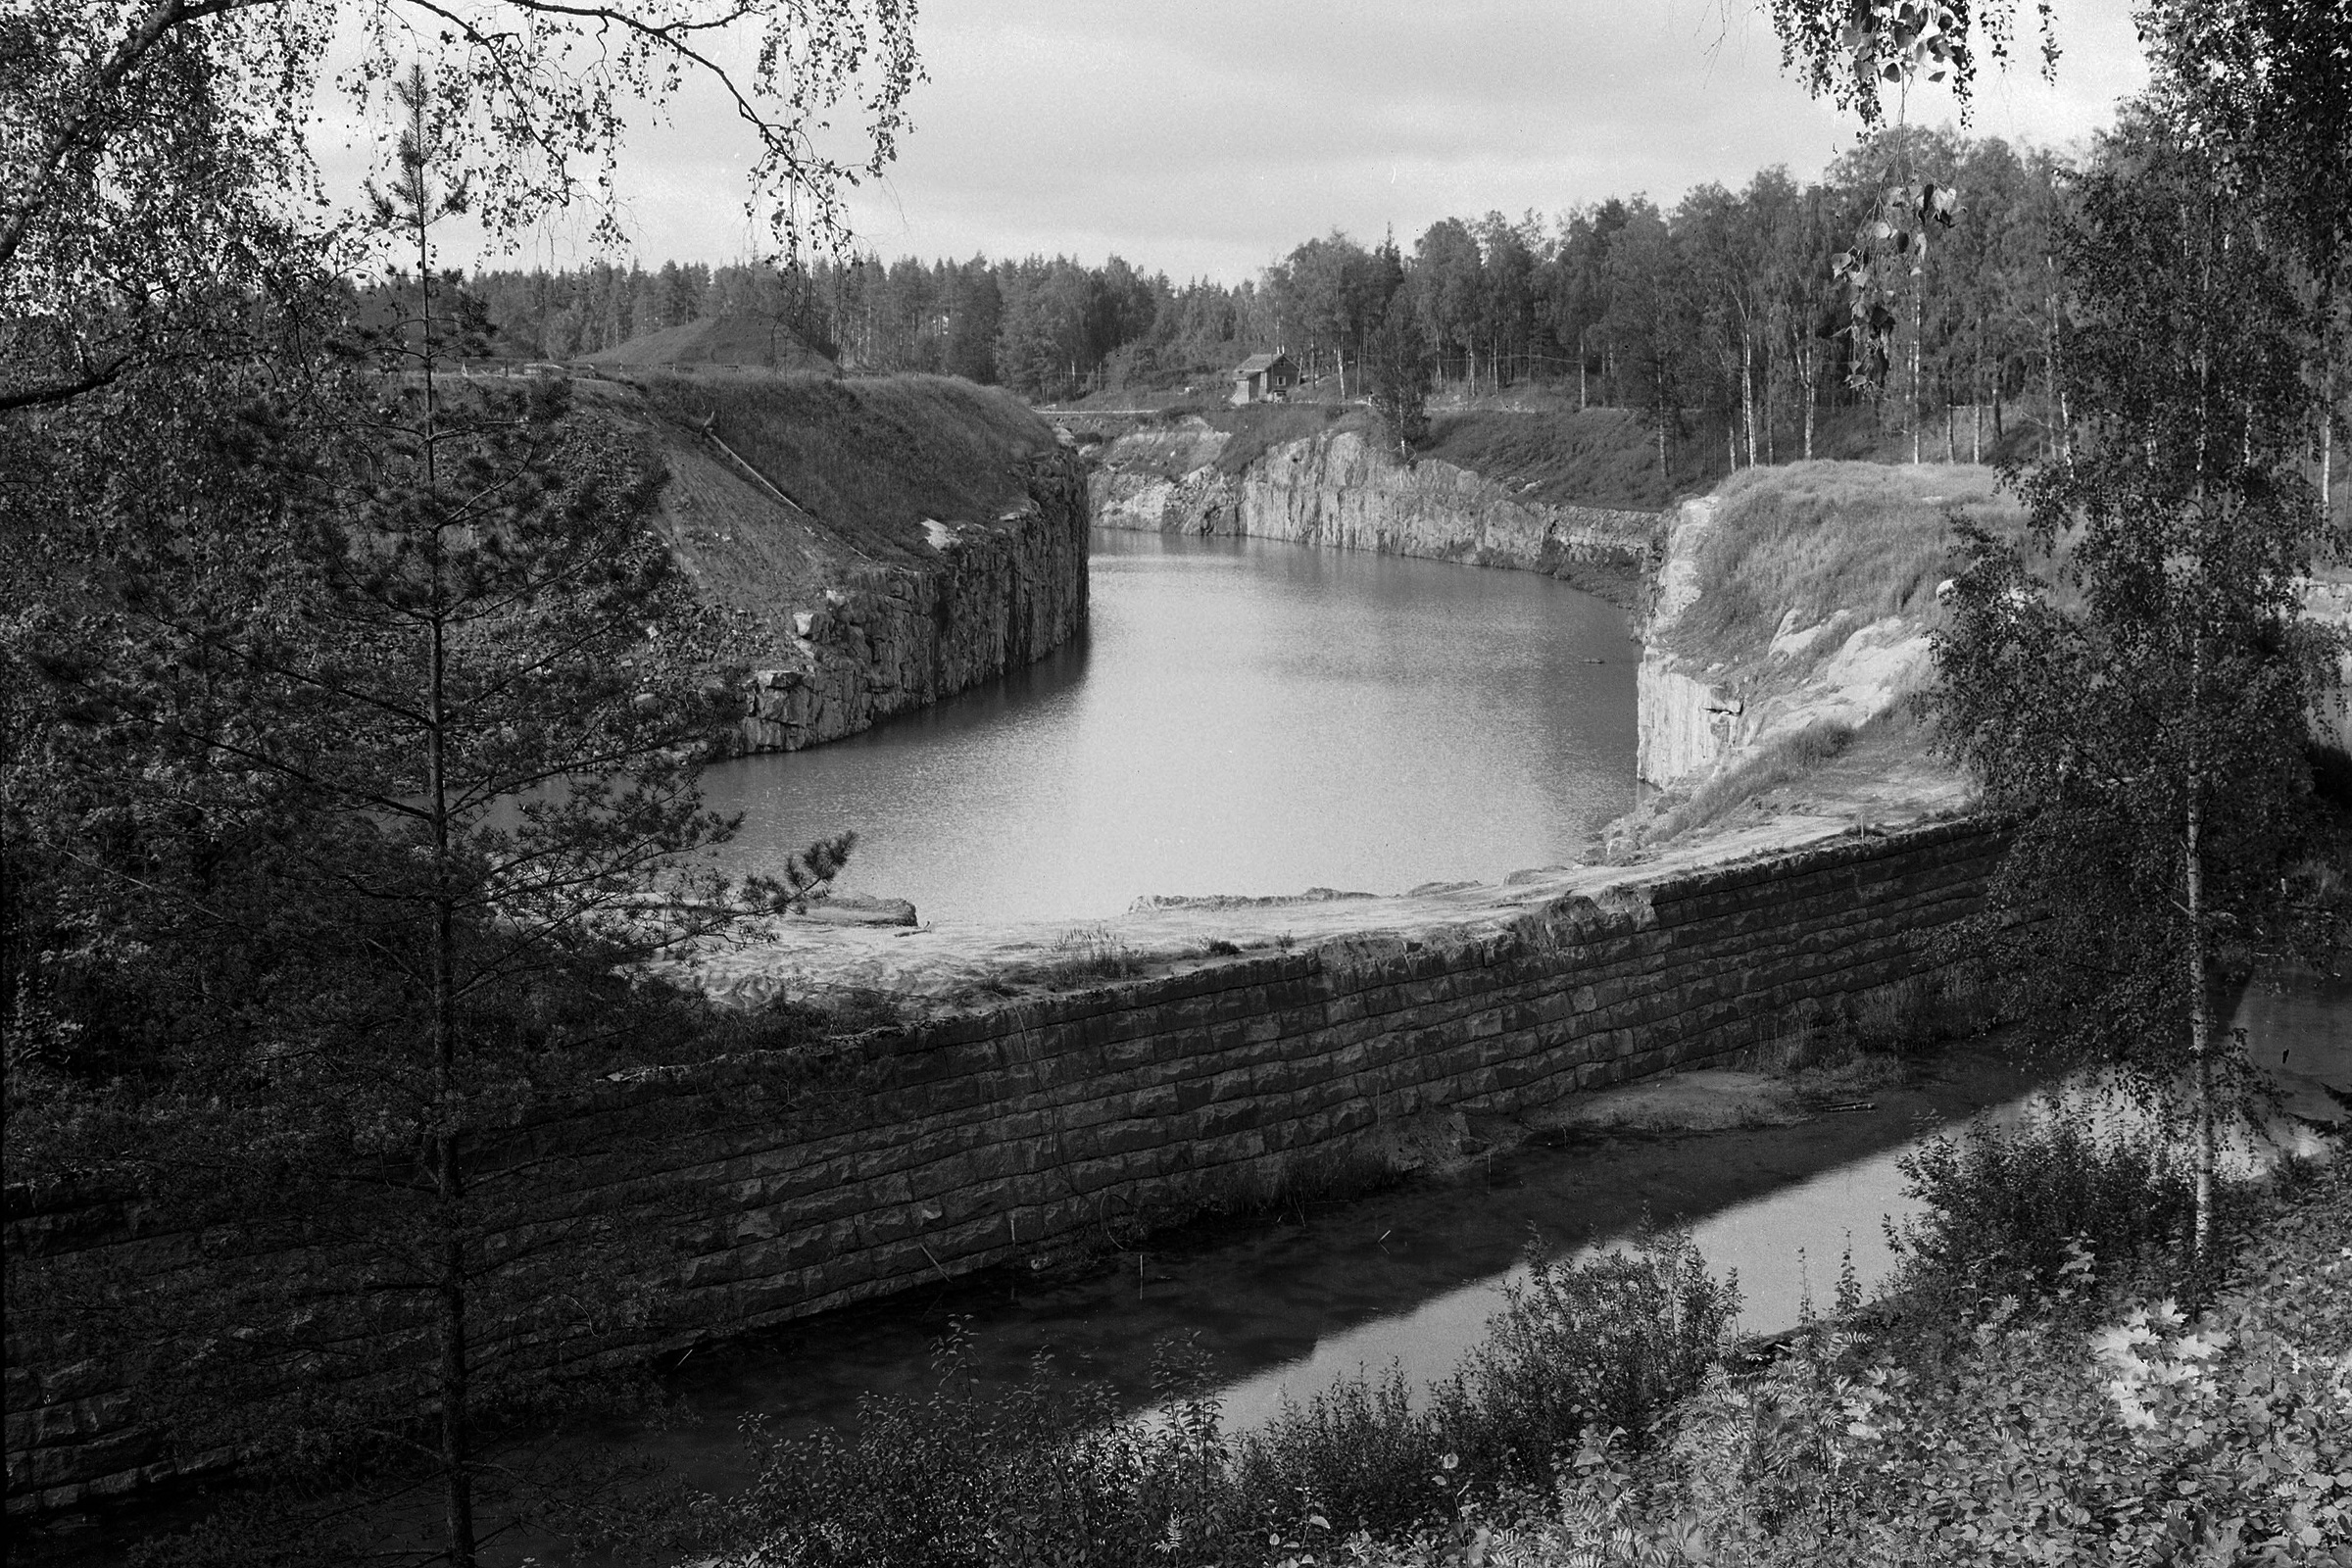 ​В 1963 году Финляндия получила в аренду ​советскую часть Сайменского канала на 50 лет. Канал был открыт в 1856 году на северо-западе Российской империи, между озером Сайма в Финляндии и Выборгским заливом в России, и после Советско-финской войны 1939&ndash;1940-го оказался разделен государственной границей. Арендная ставка зависела от объемов грузоперевозок и варьировалась от 180 тыс. до 260 тыс. руб. в год. При этом в документе оговаривалась возможность изменения ставки, и в 1990-х&nbsp;арендную плату стали взимать в долларах США.

В 2011 году Россия продлила срок аренды еще на 50 лет за &euro;1,22 млн в год. Кроме того, взимается плата за валовую вместимость проходящих судов.
